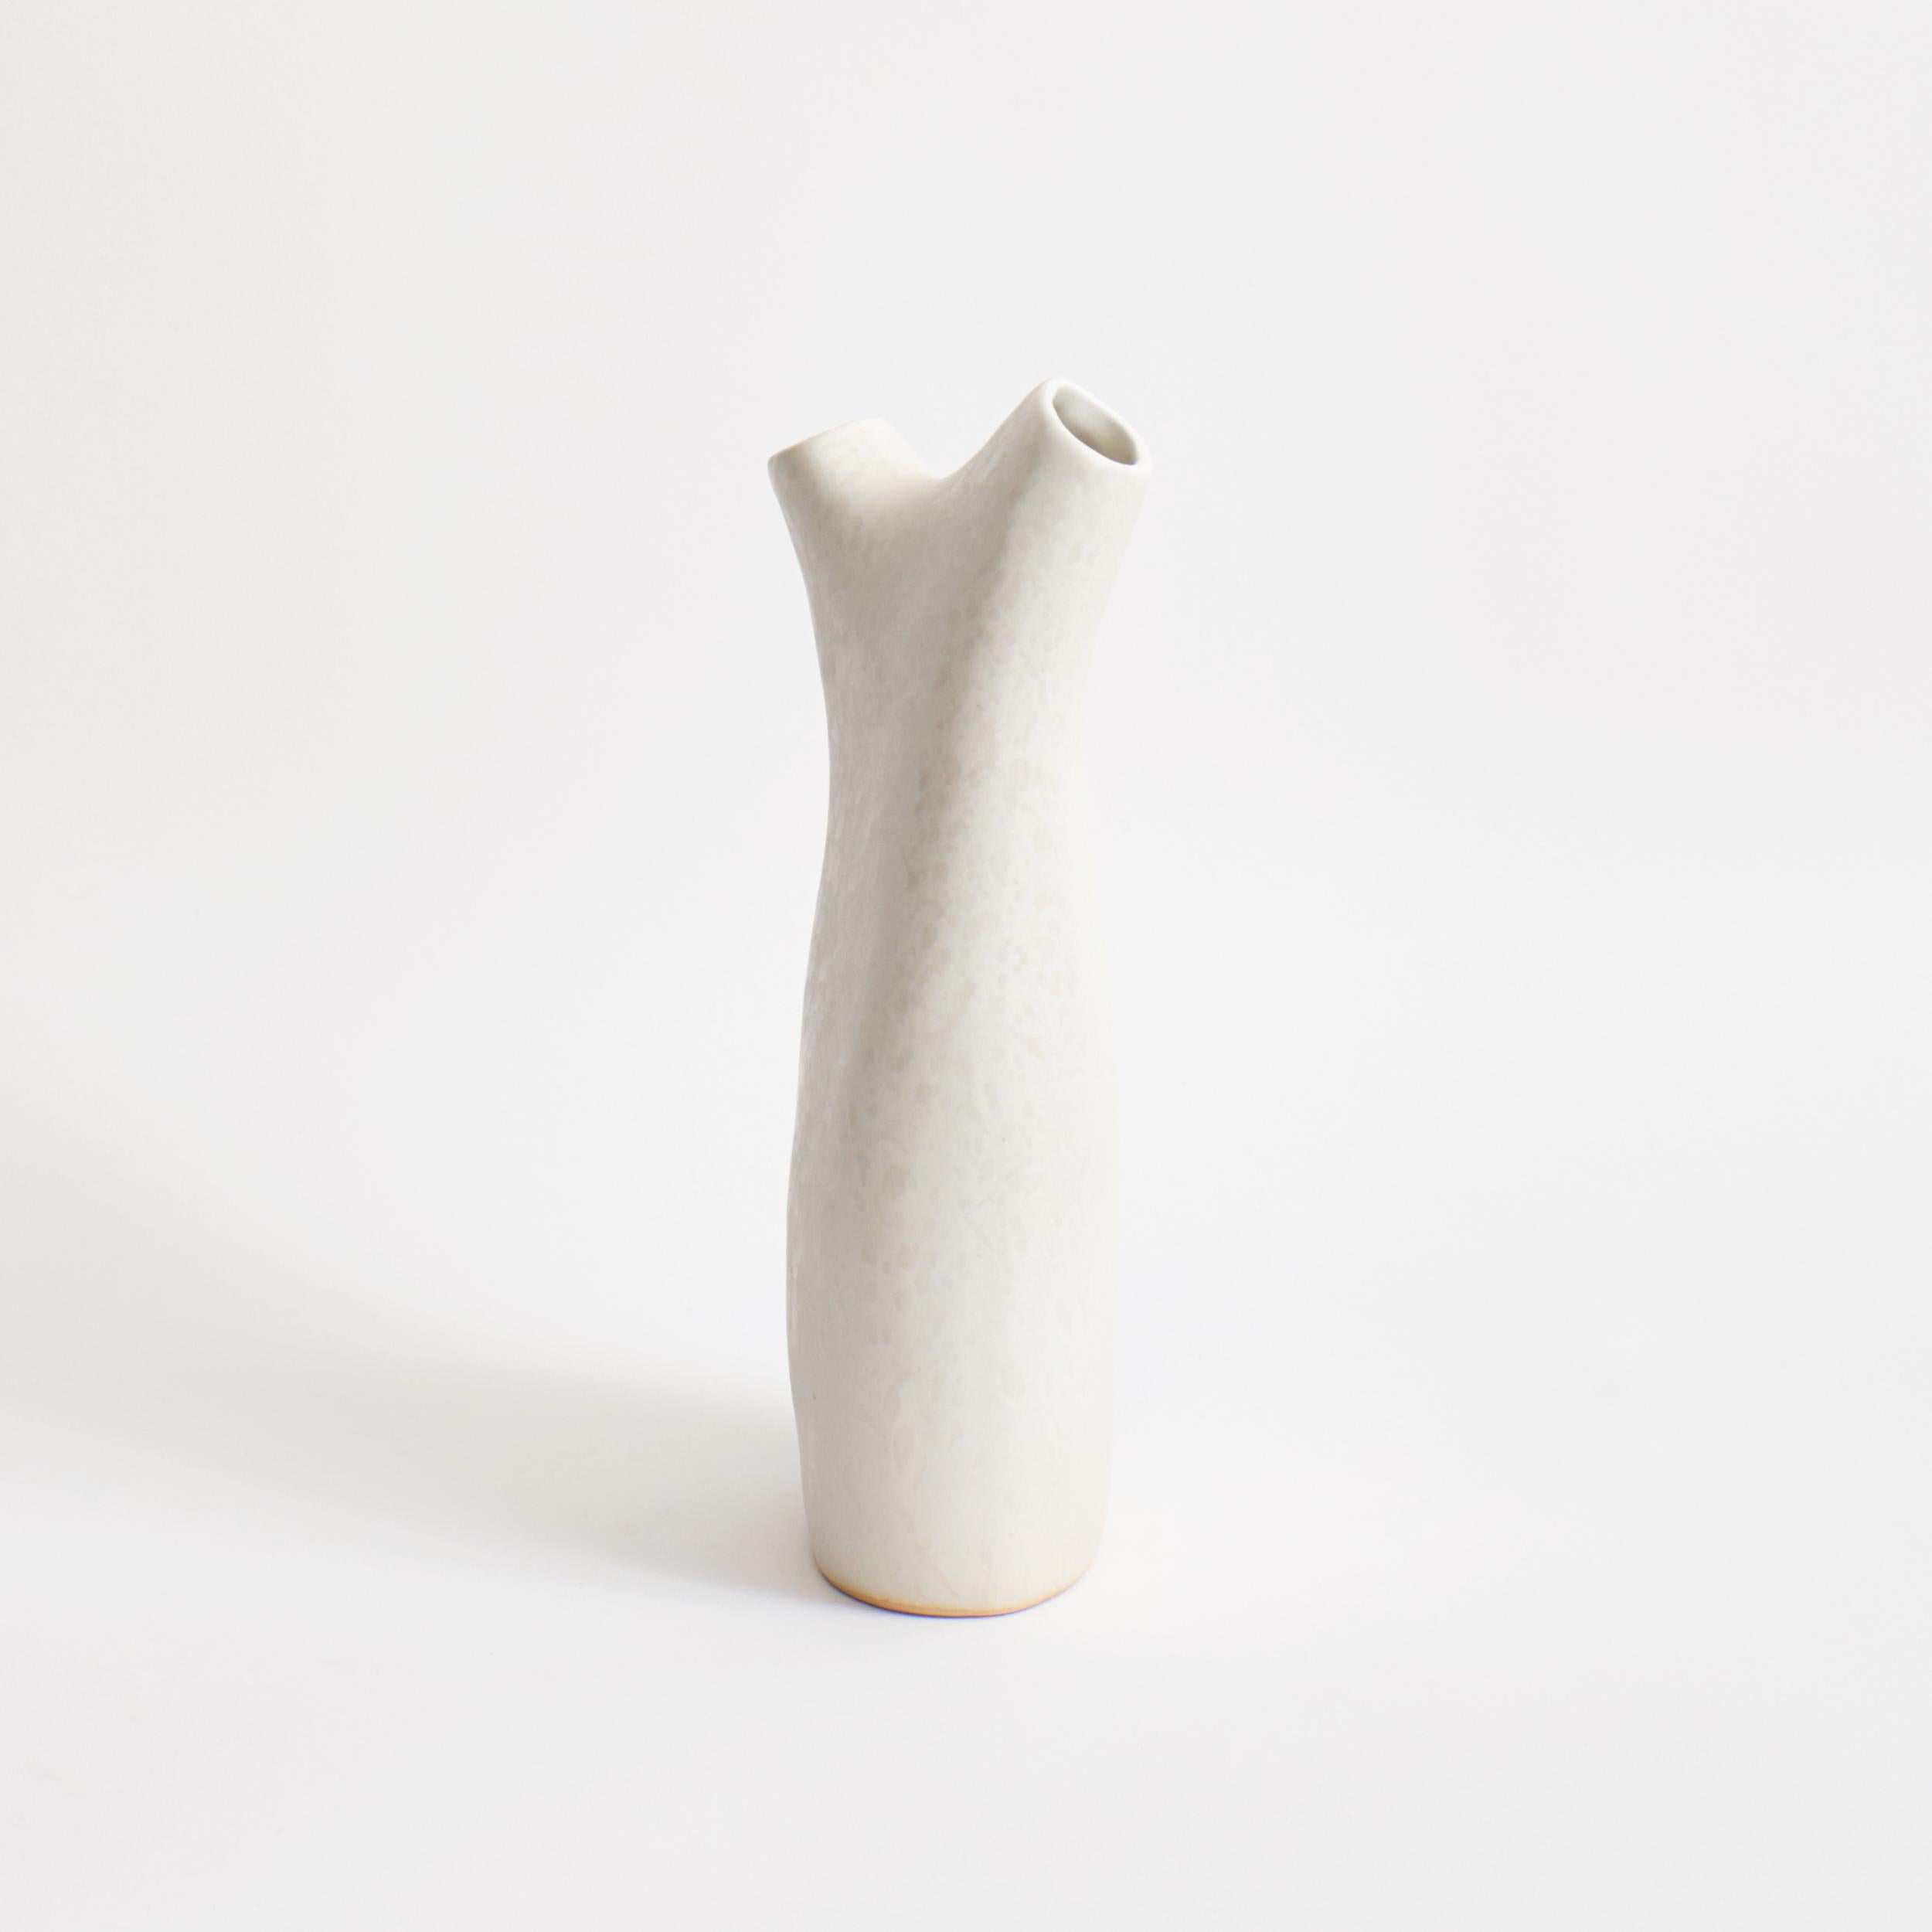 Vase Gemini in Weiß 
Entworfen von Projekt 213A im Jahr 2020
Handgefertigtes Steingut

Ein schönes Blumenarrangement kann die innere Qualität von Blumen und Pflanzen zum Ausdruck bringen und Emotionen ausdrücken. Das ist Ikebana, die japanische